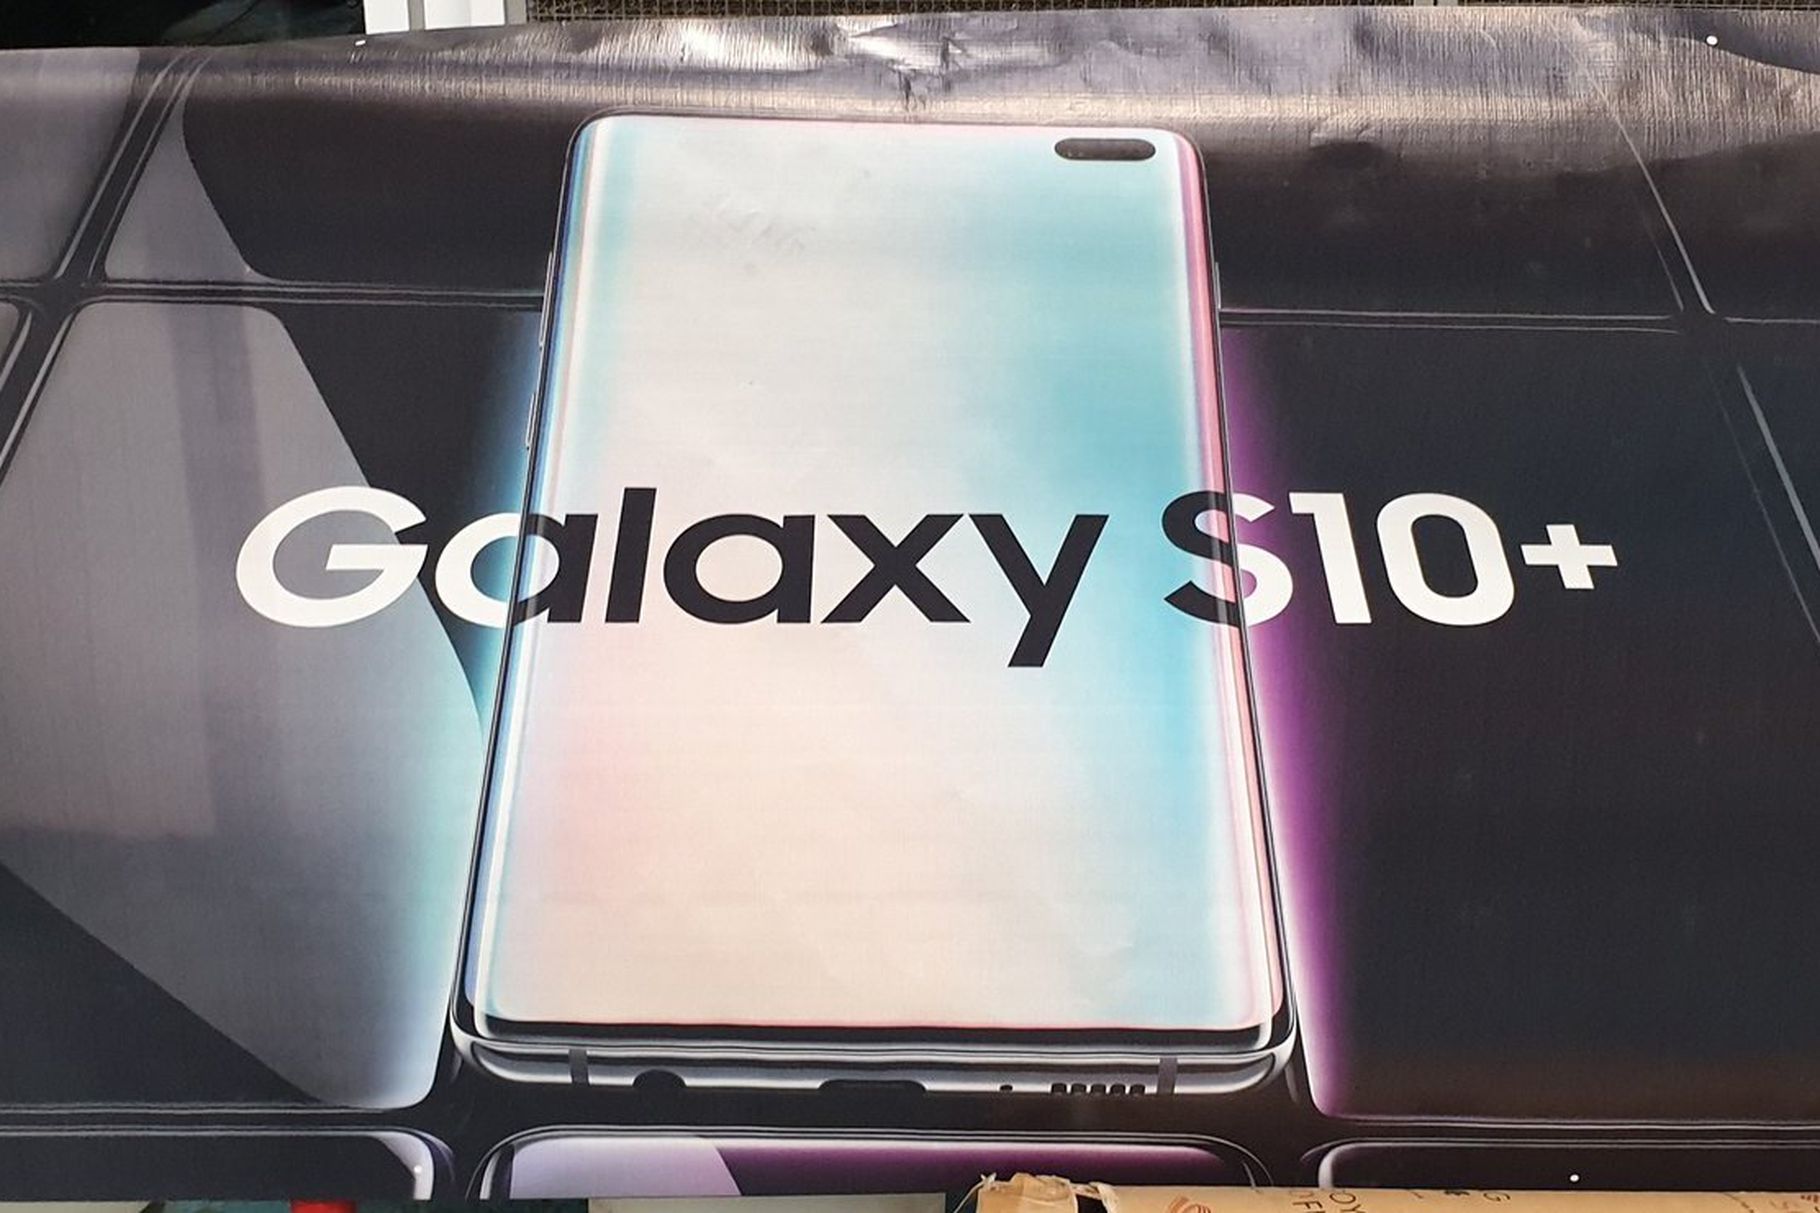 เผยคลิปวิดีโอโปโมท Galaxy S10 ส่งตรงจากรายการทีวีชนิดไม่ต้องรอเปิดตัว!